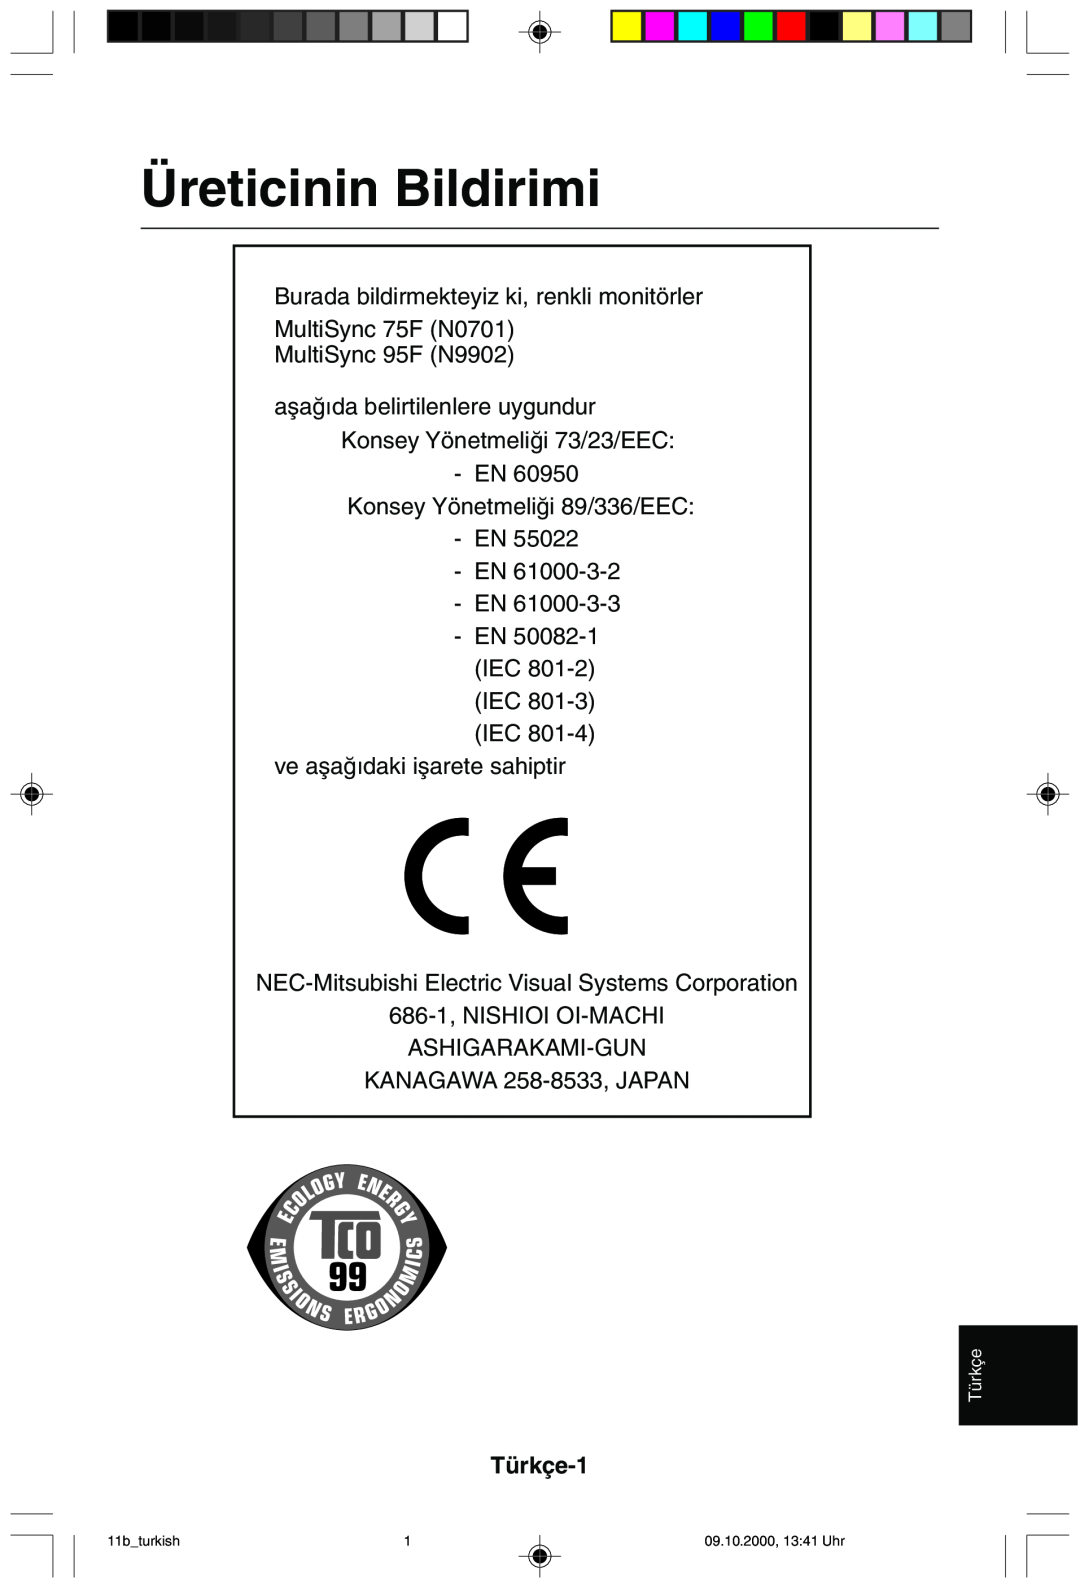 NEC 95F user manual Üreticinin Bildirimi, Türkçe-1 